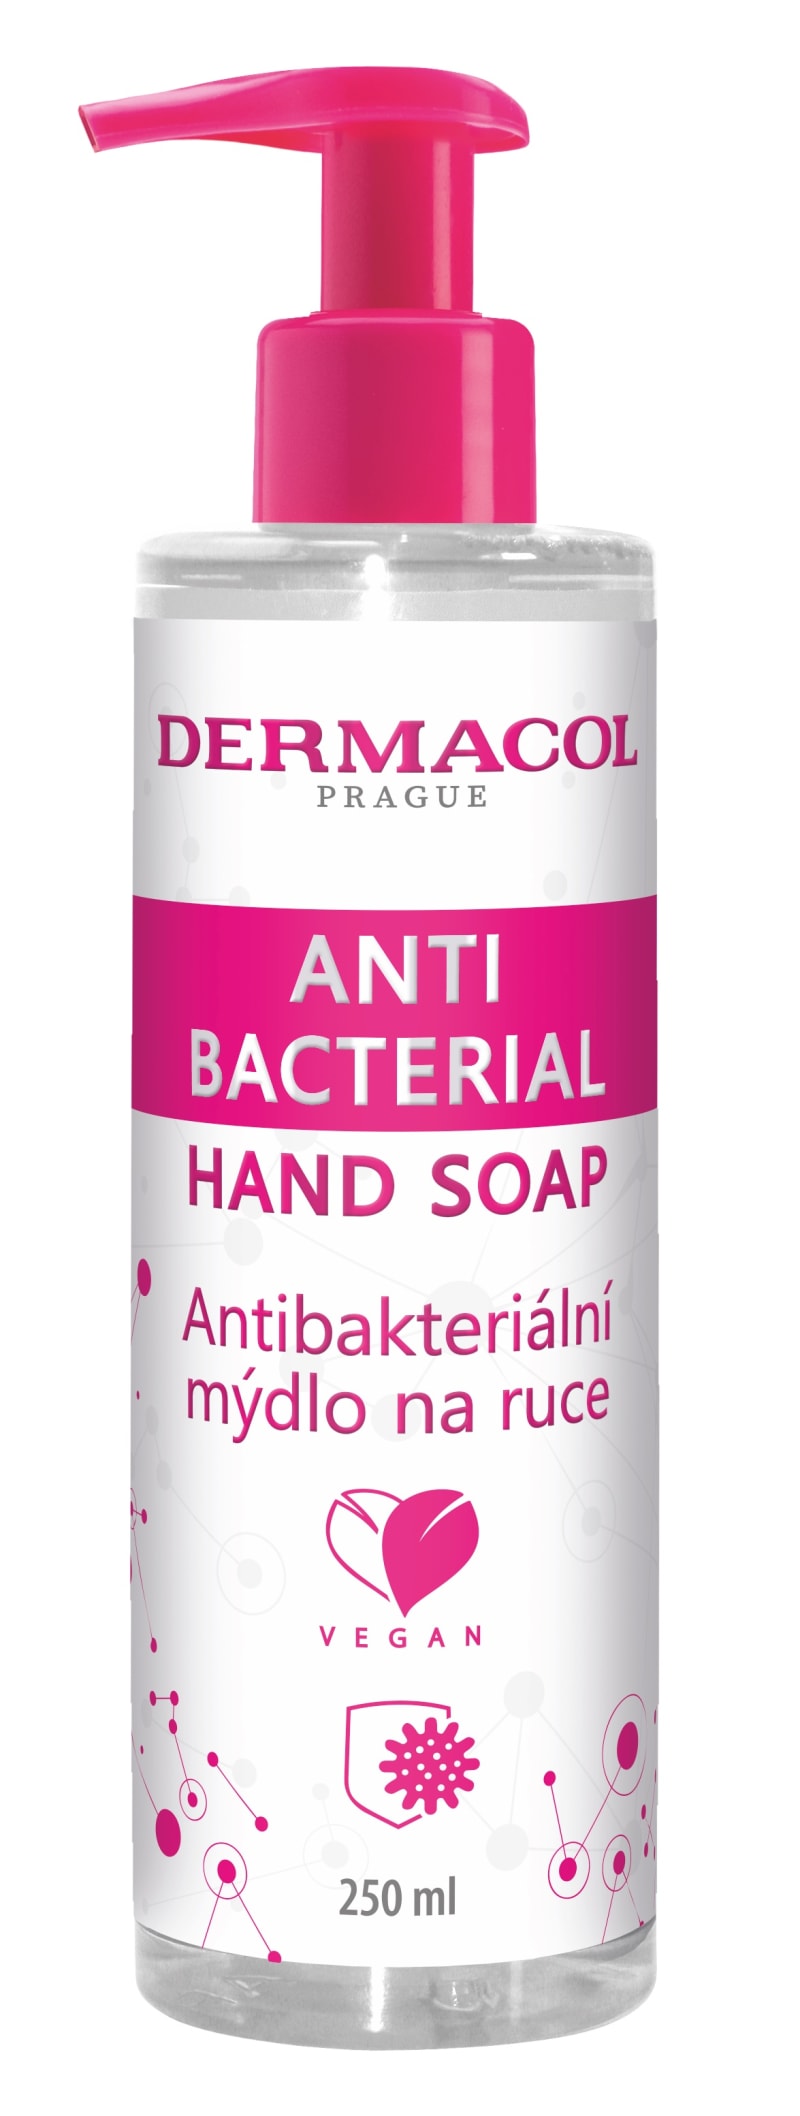 S taškou získáte rovněž praktické antibakteriální mýdlo.